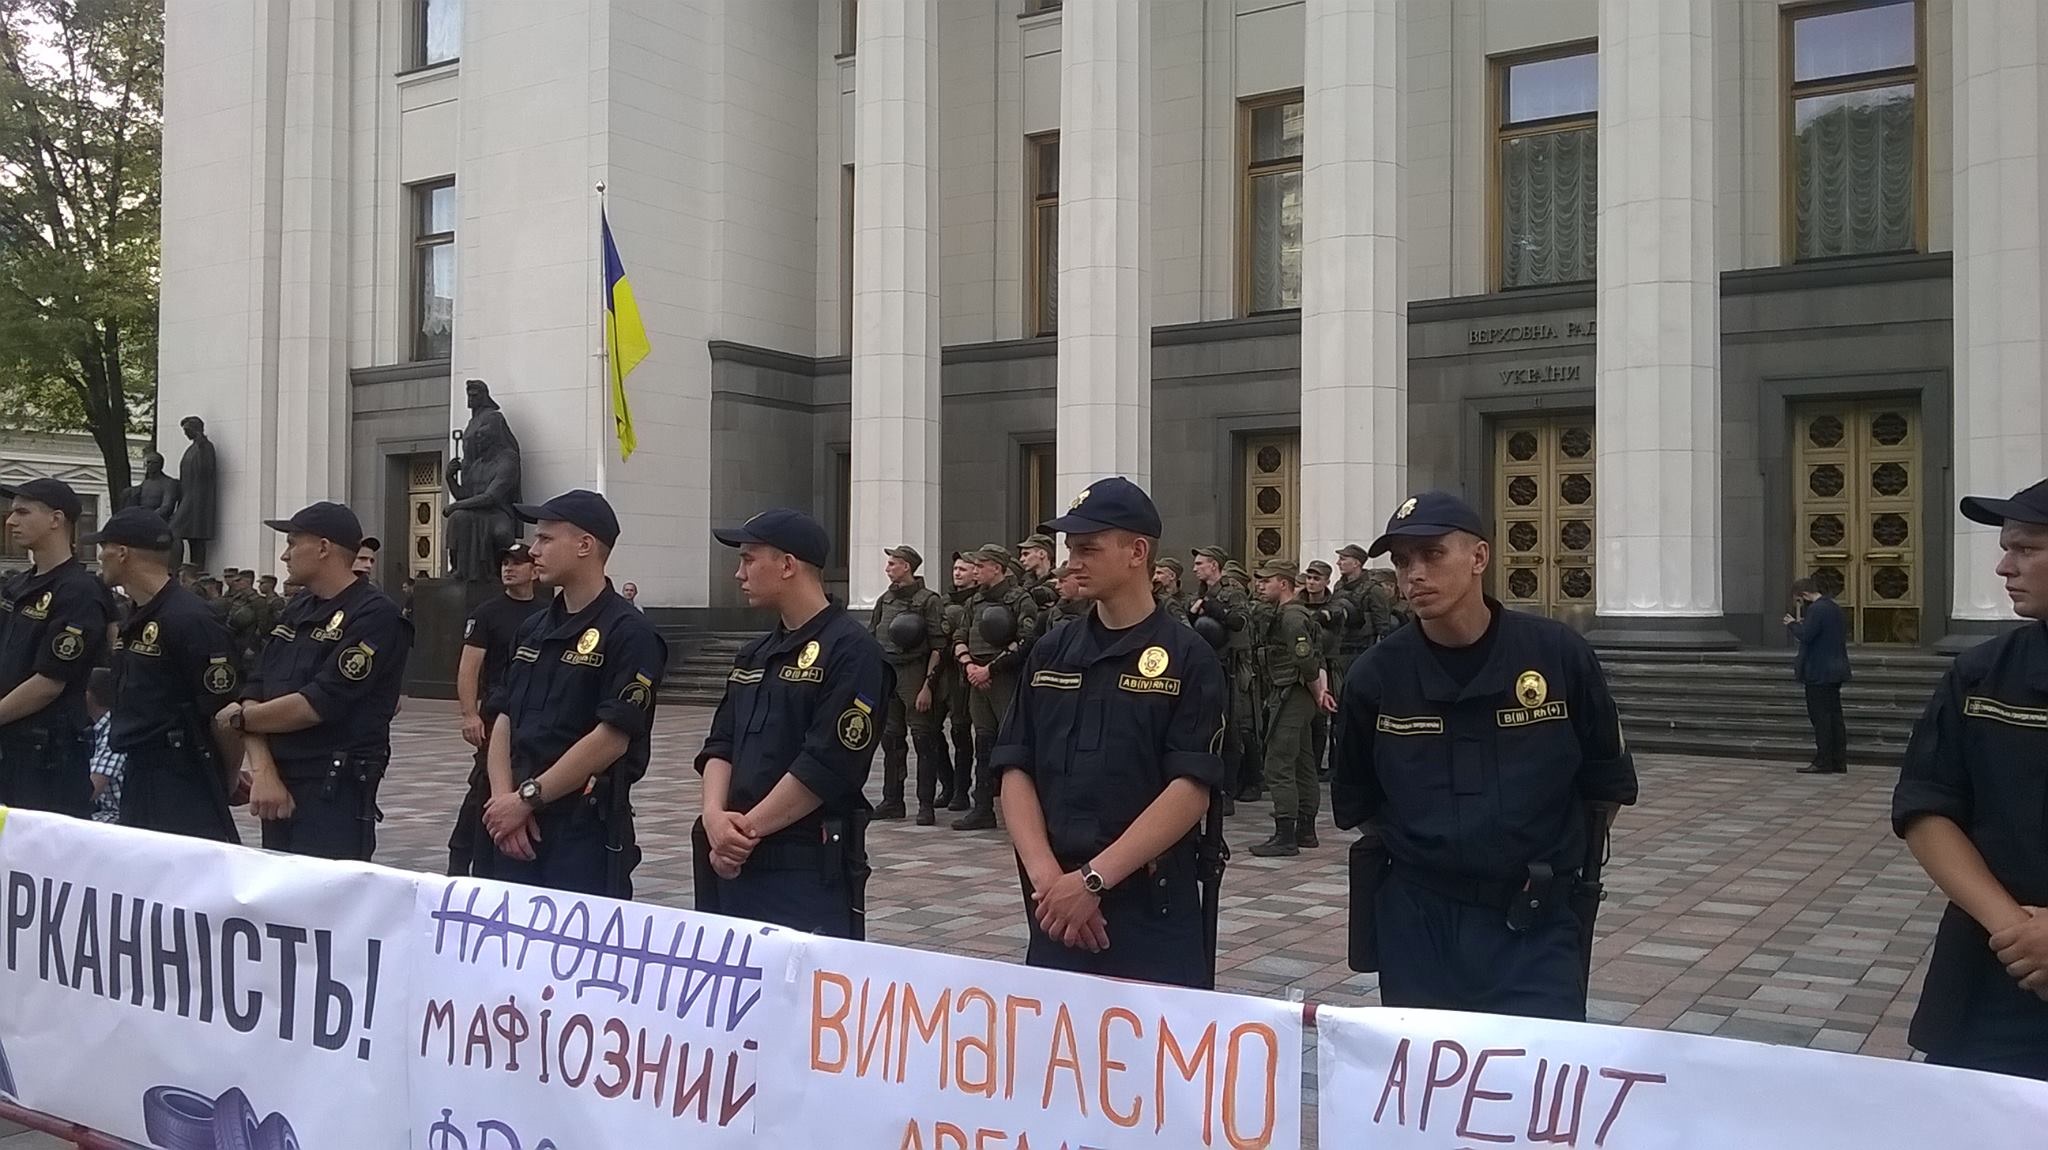 "Треш и позор. Нет ни духа, ни силы Майдана - жалкая уродская пародия на протест", - житель Киева разнес в пух и прах митинг возле Рады